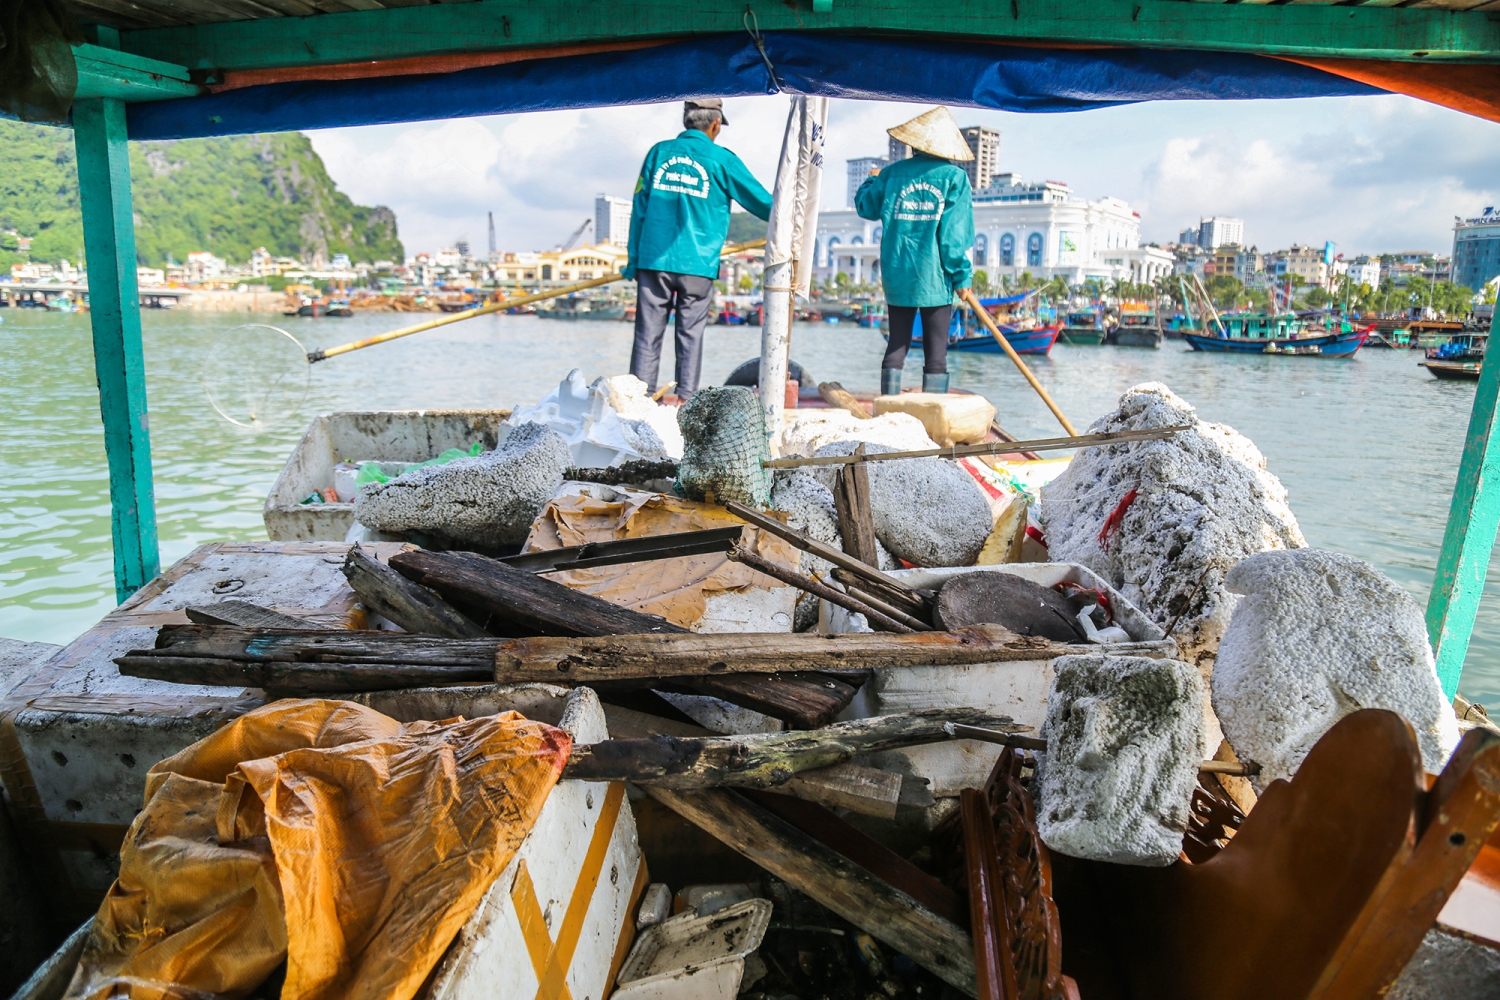 Ngay từ khi đến các cảng tàu, việc khuyến cáo để lại chai nhựa, đồ nhựa dùng 1 lần vào các thùng rác trên bờ sẽ được thựchiện bằng nhiều hình thức tuyên truyền khác nhau